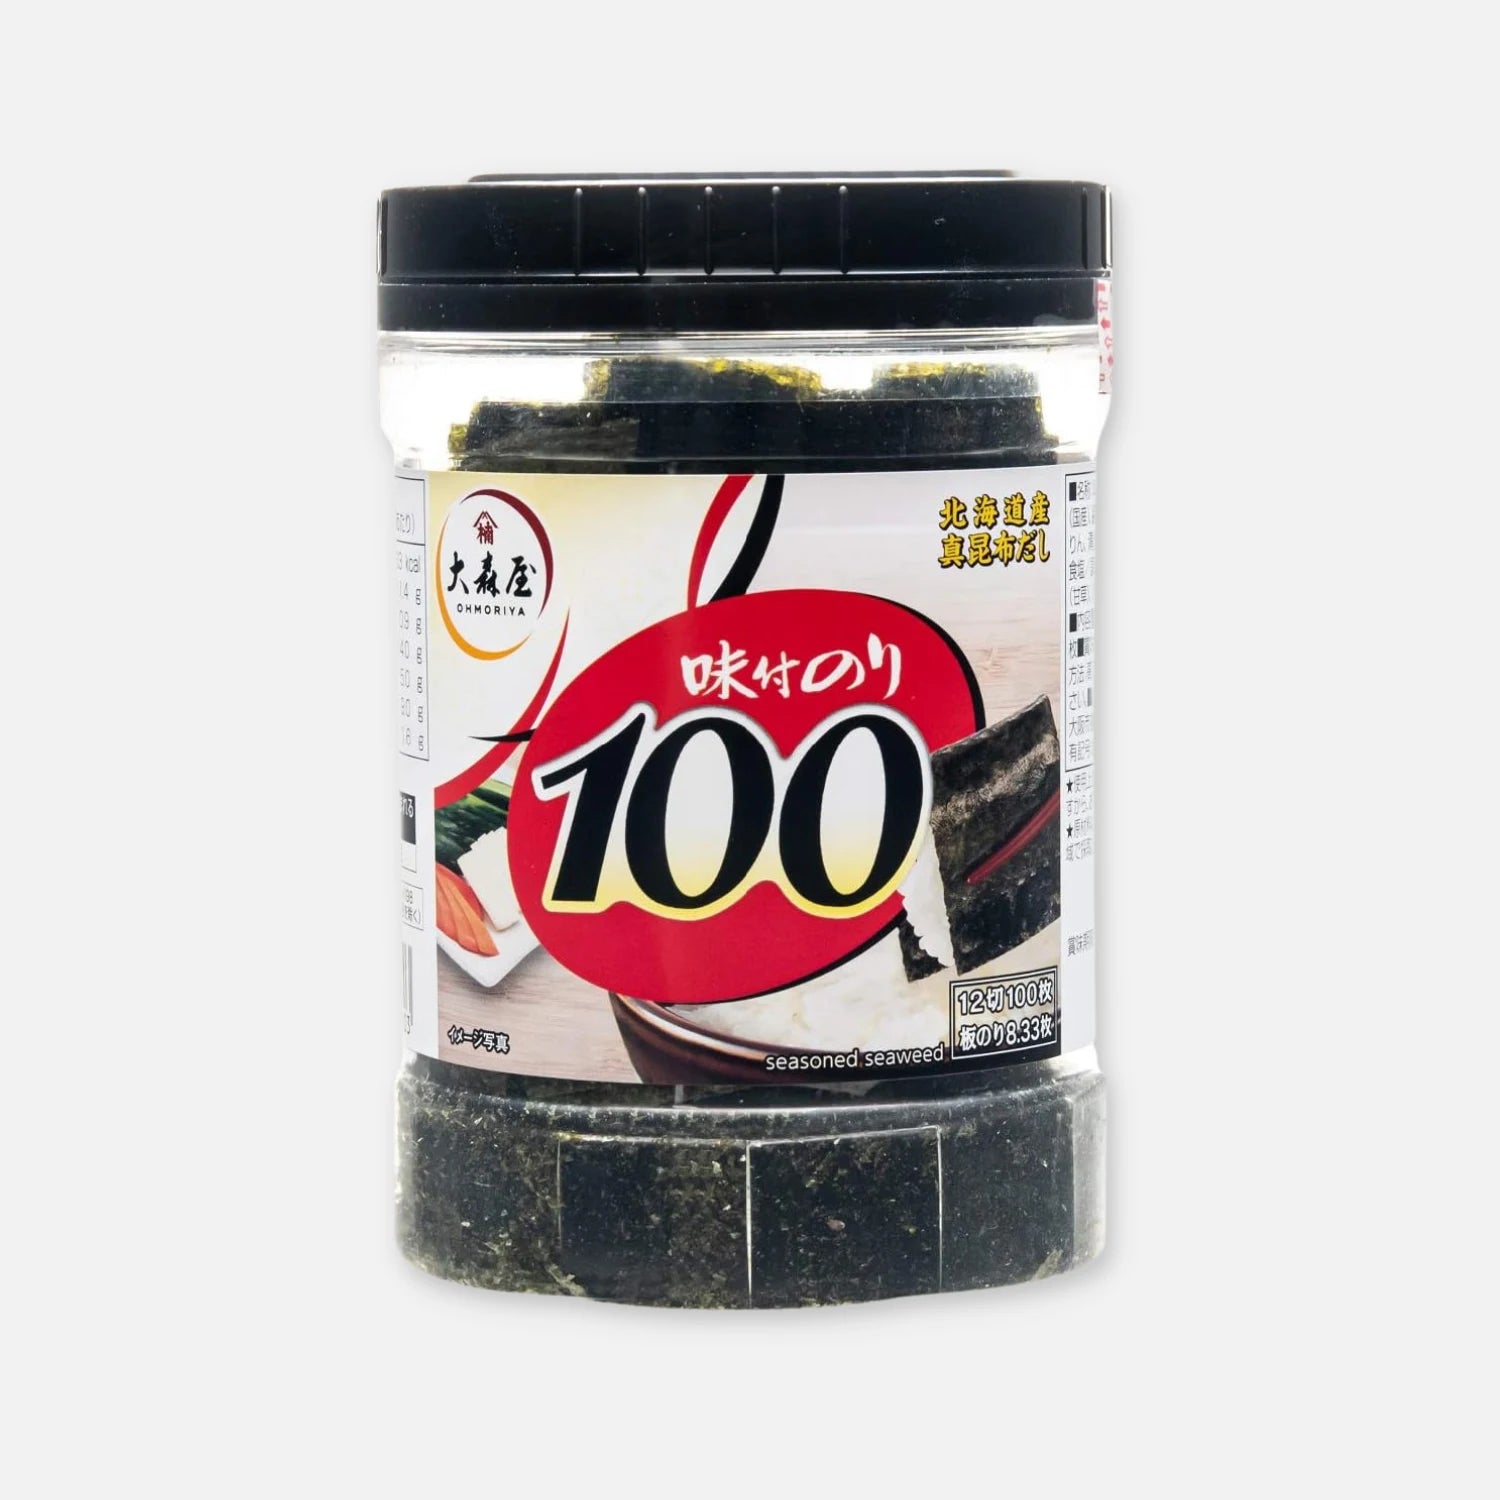 Oomoriya Nori Seasoned Dried Seaweed 100 Pieces - Buy Me Japan